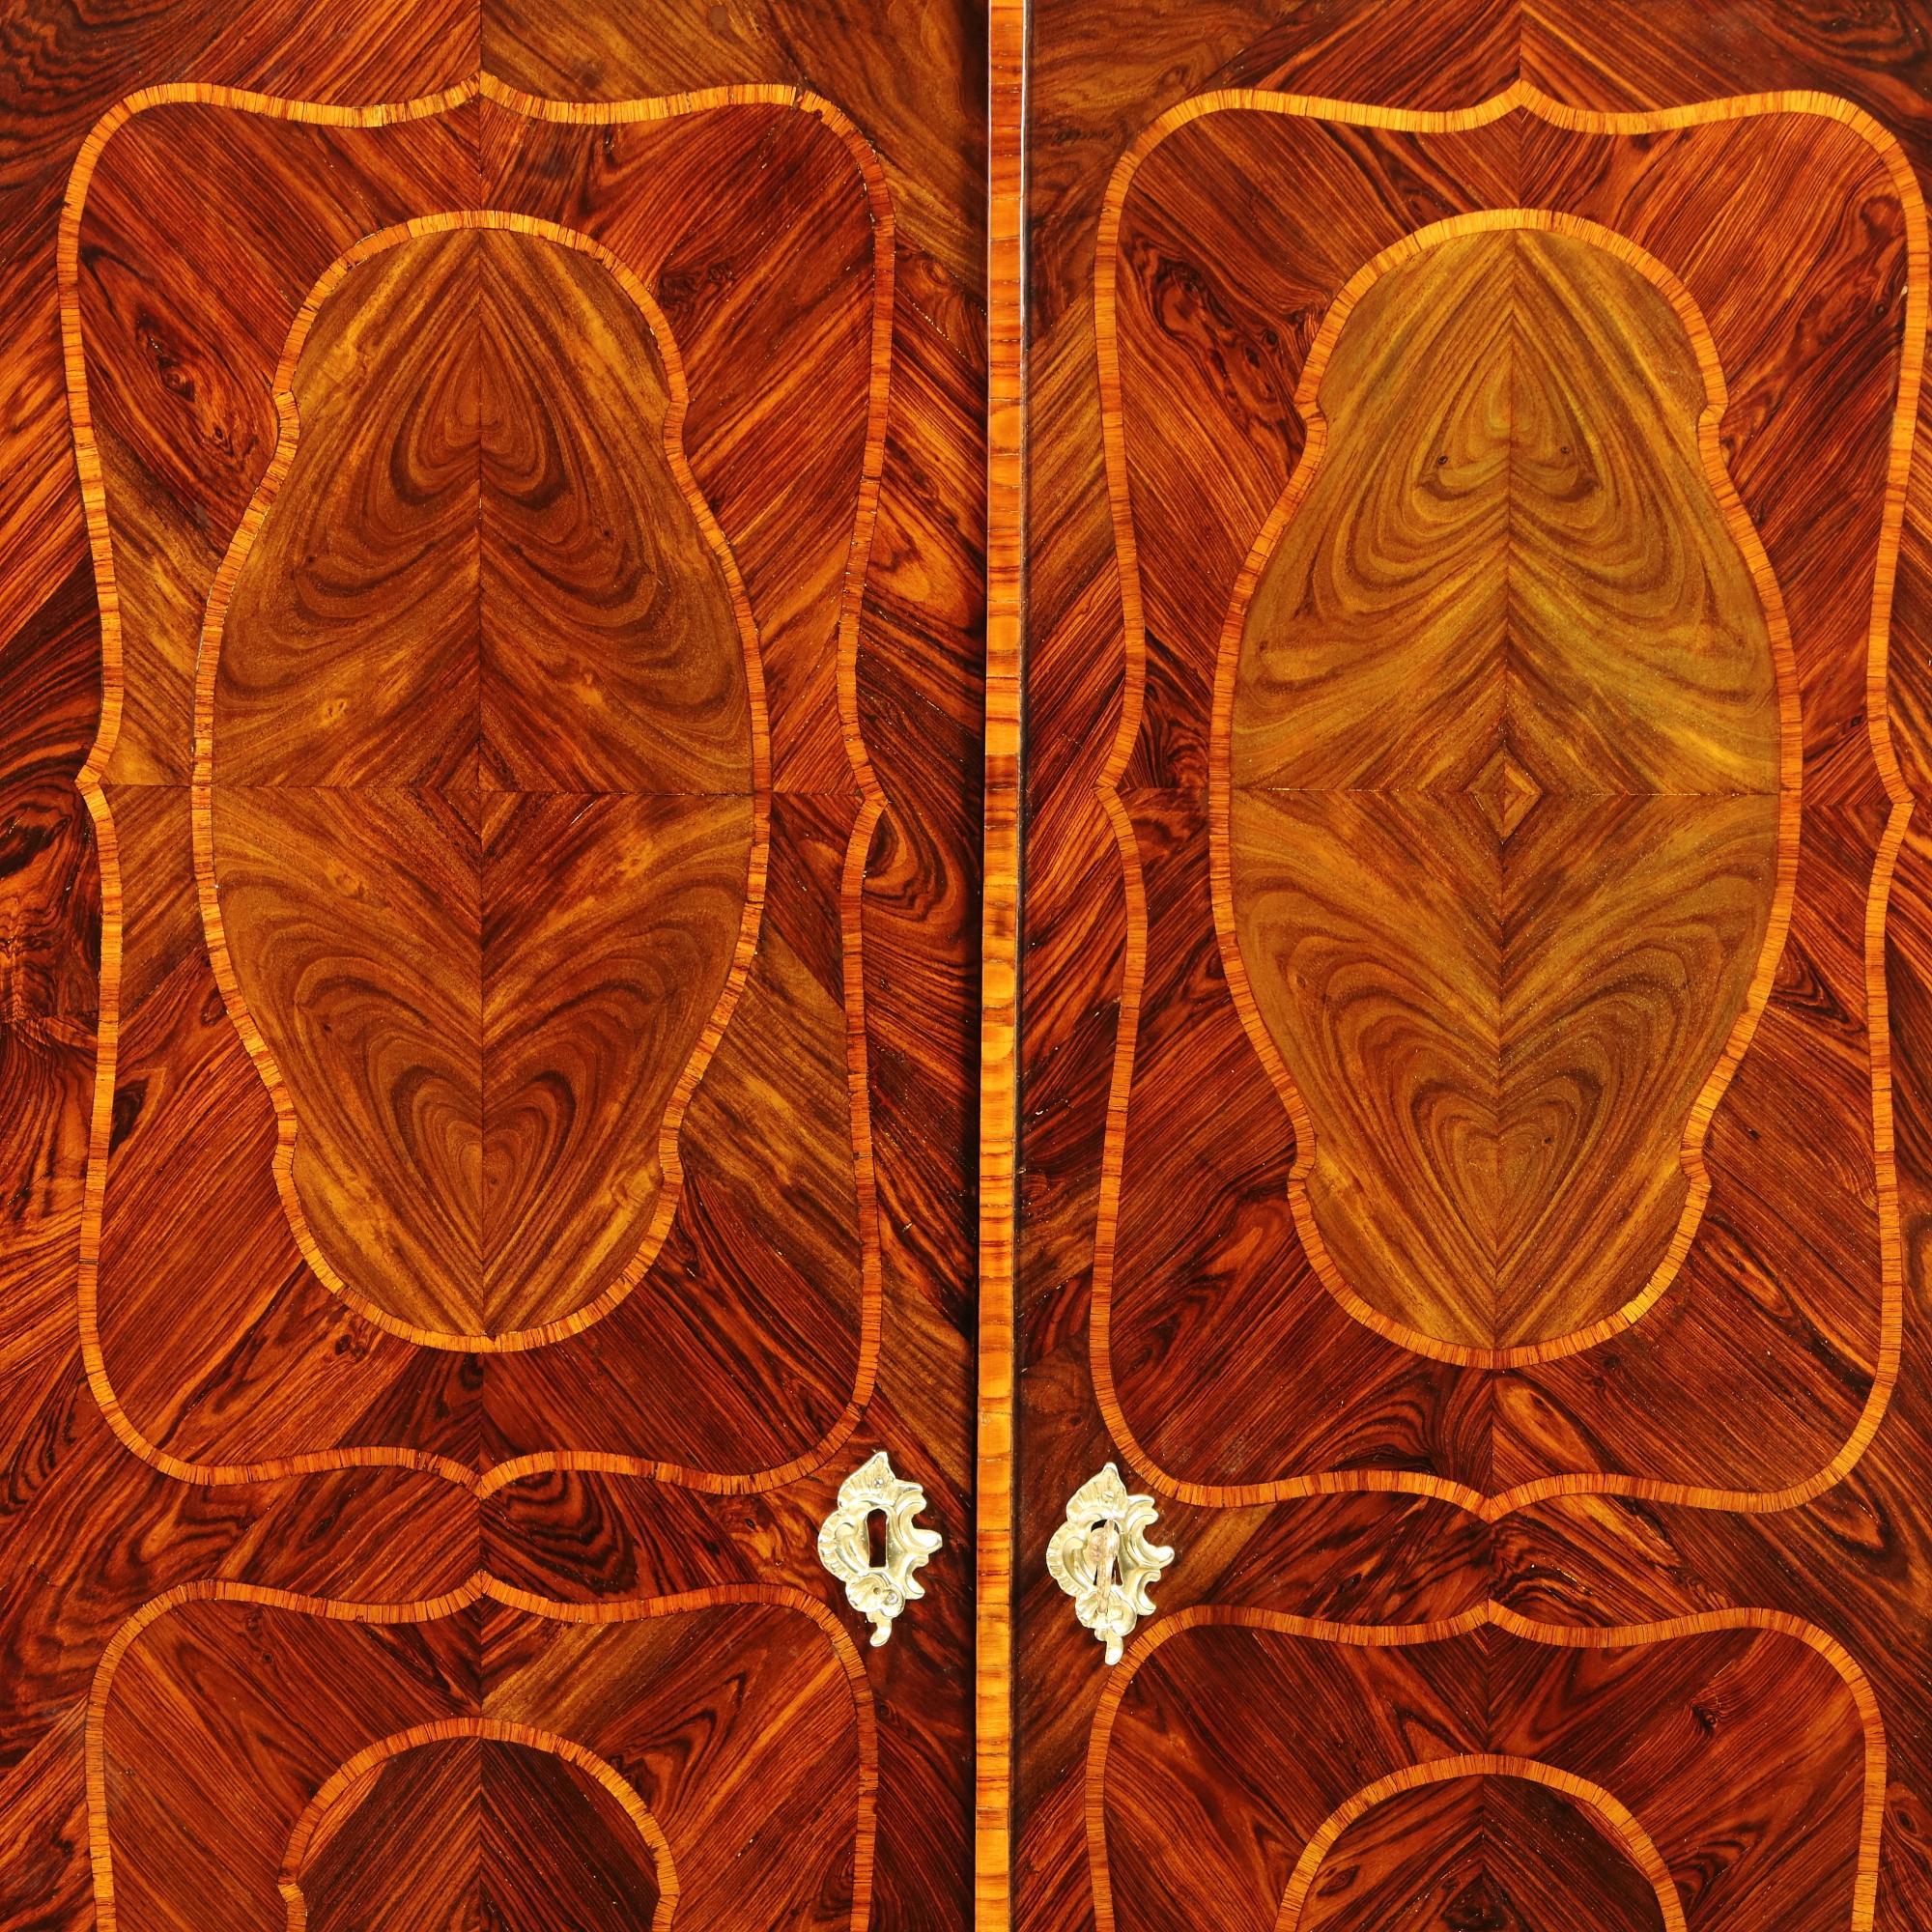 Armoire ou penderie en marqueterie de transition Louis XV du XVIIIe siècle

Petite armoire rectangulaire reposant sur une base à pieds courts en cabriole et à tablier curviligne, ouvrant à deux portes pour révéler l'intérieur avec trois étagères